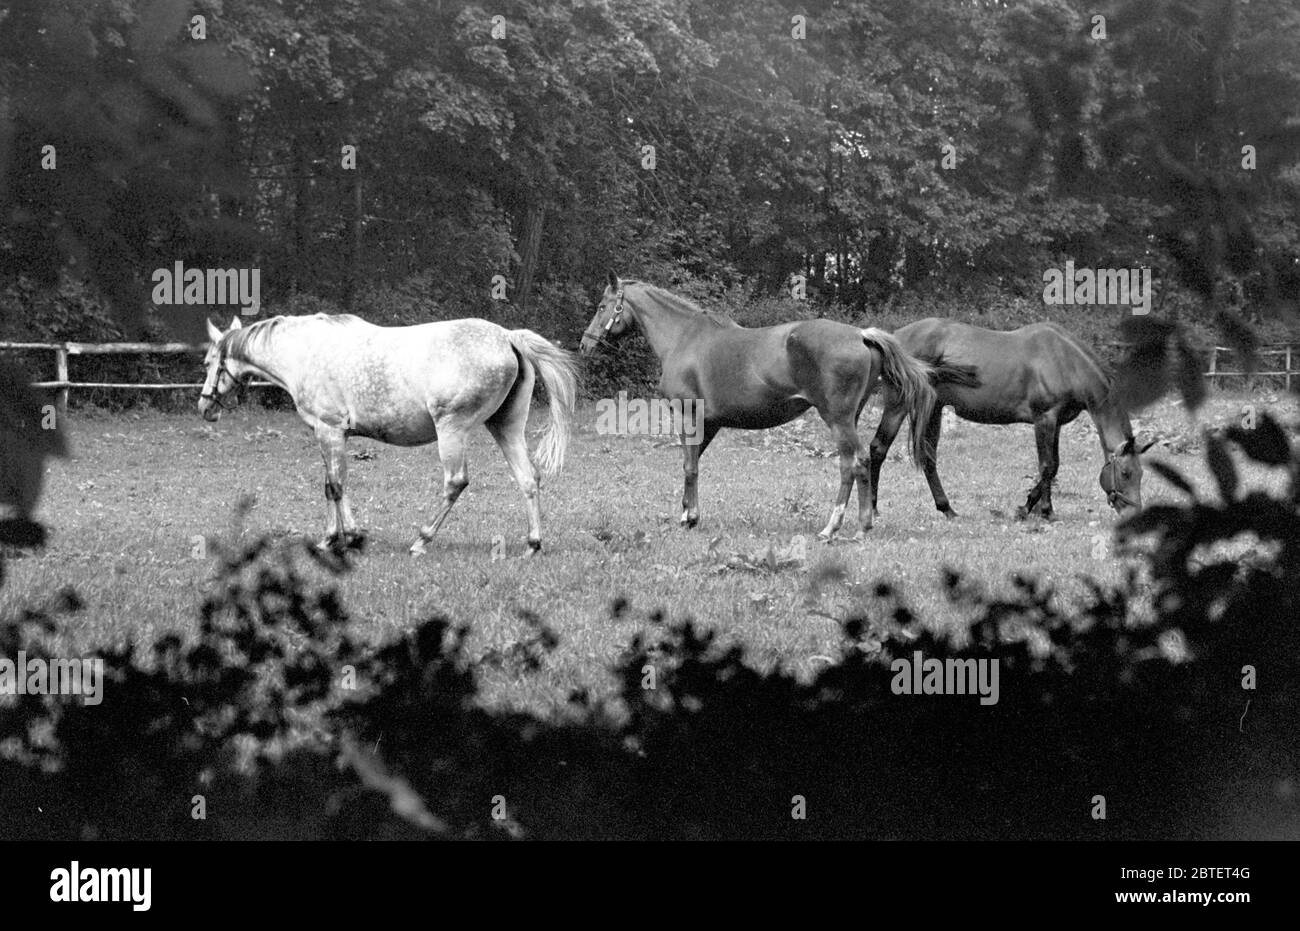 15 settembre 1985, Sassonia, Torgau: I cavalli sono in piedi in un pascolo della fattoria di prigionieri Graditz (vicino Torgau) nell'autunno 1985. Data esatta della registrazione non nota. Foto: Volkmar Heinz/dpa-Zentralbild/ZB Foto Stock